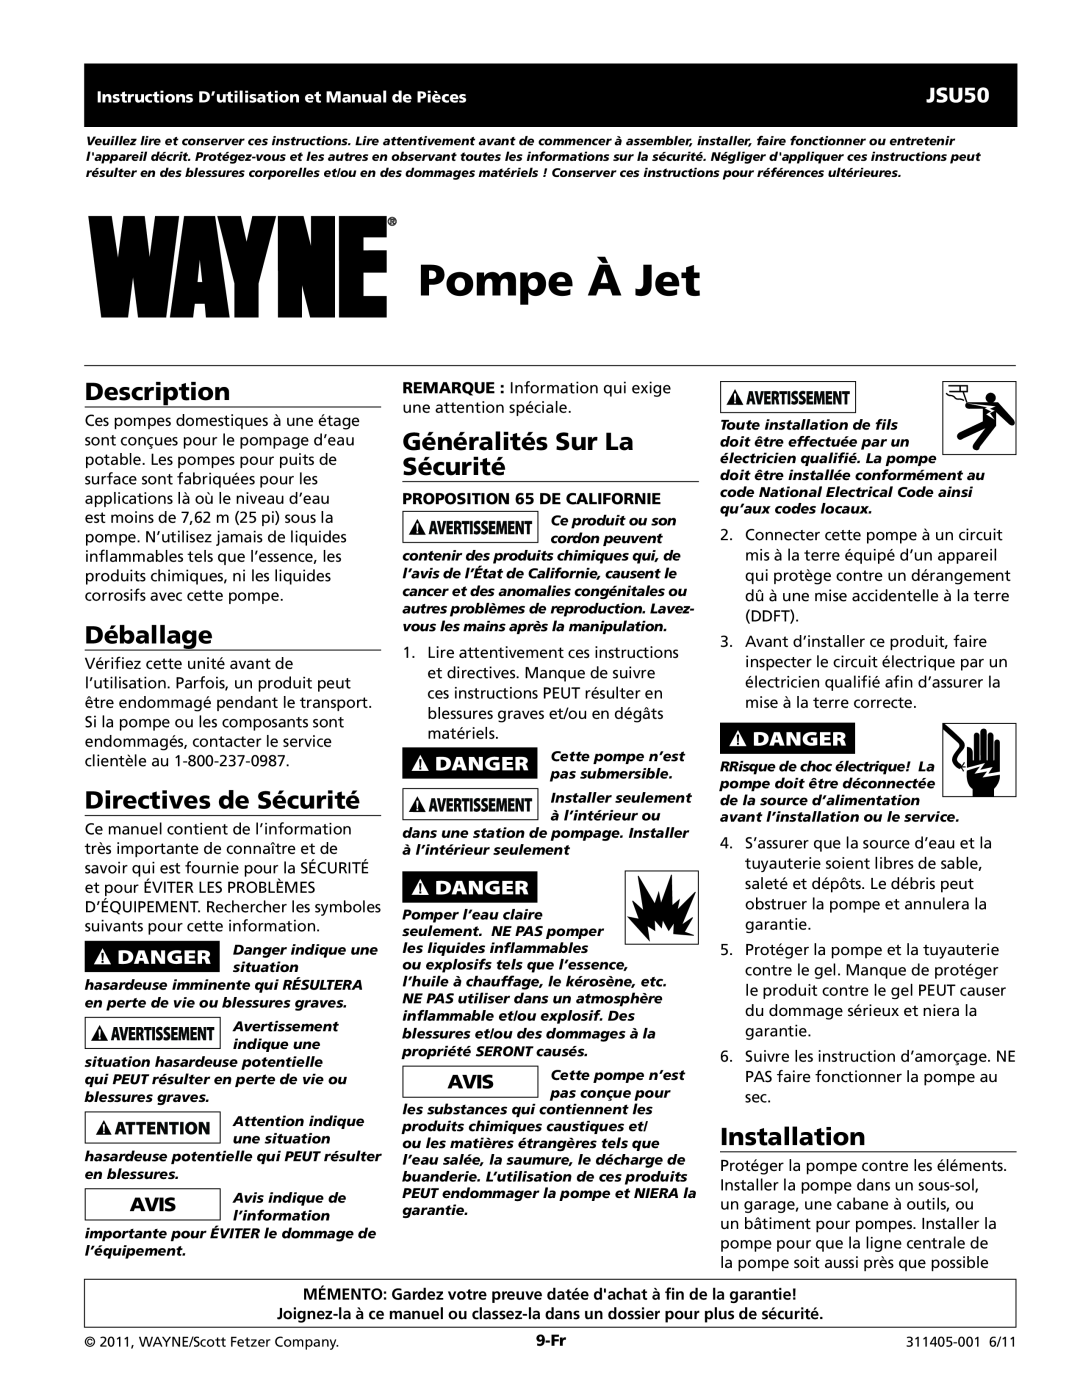 Wayne JSU50 Pompe À Jet, Déballage, Directives de Sécurité, Généralités Sur La Sécurité, PRoposition 65 DE CALIFORNIE 